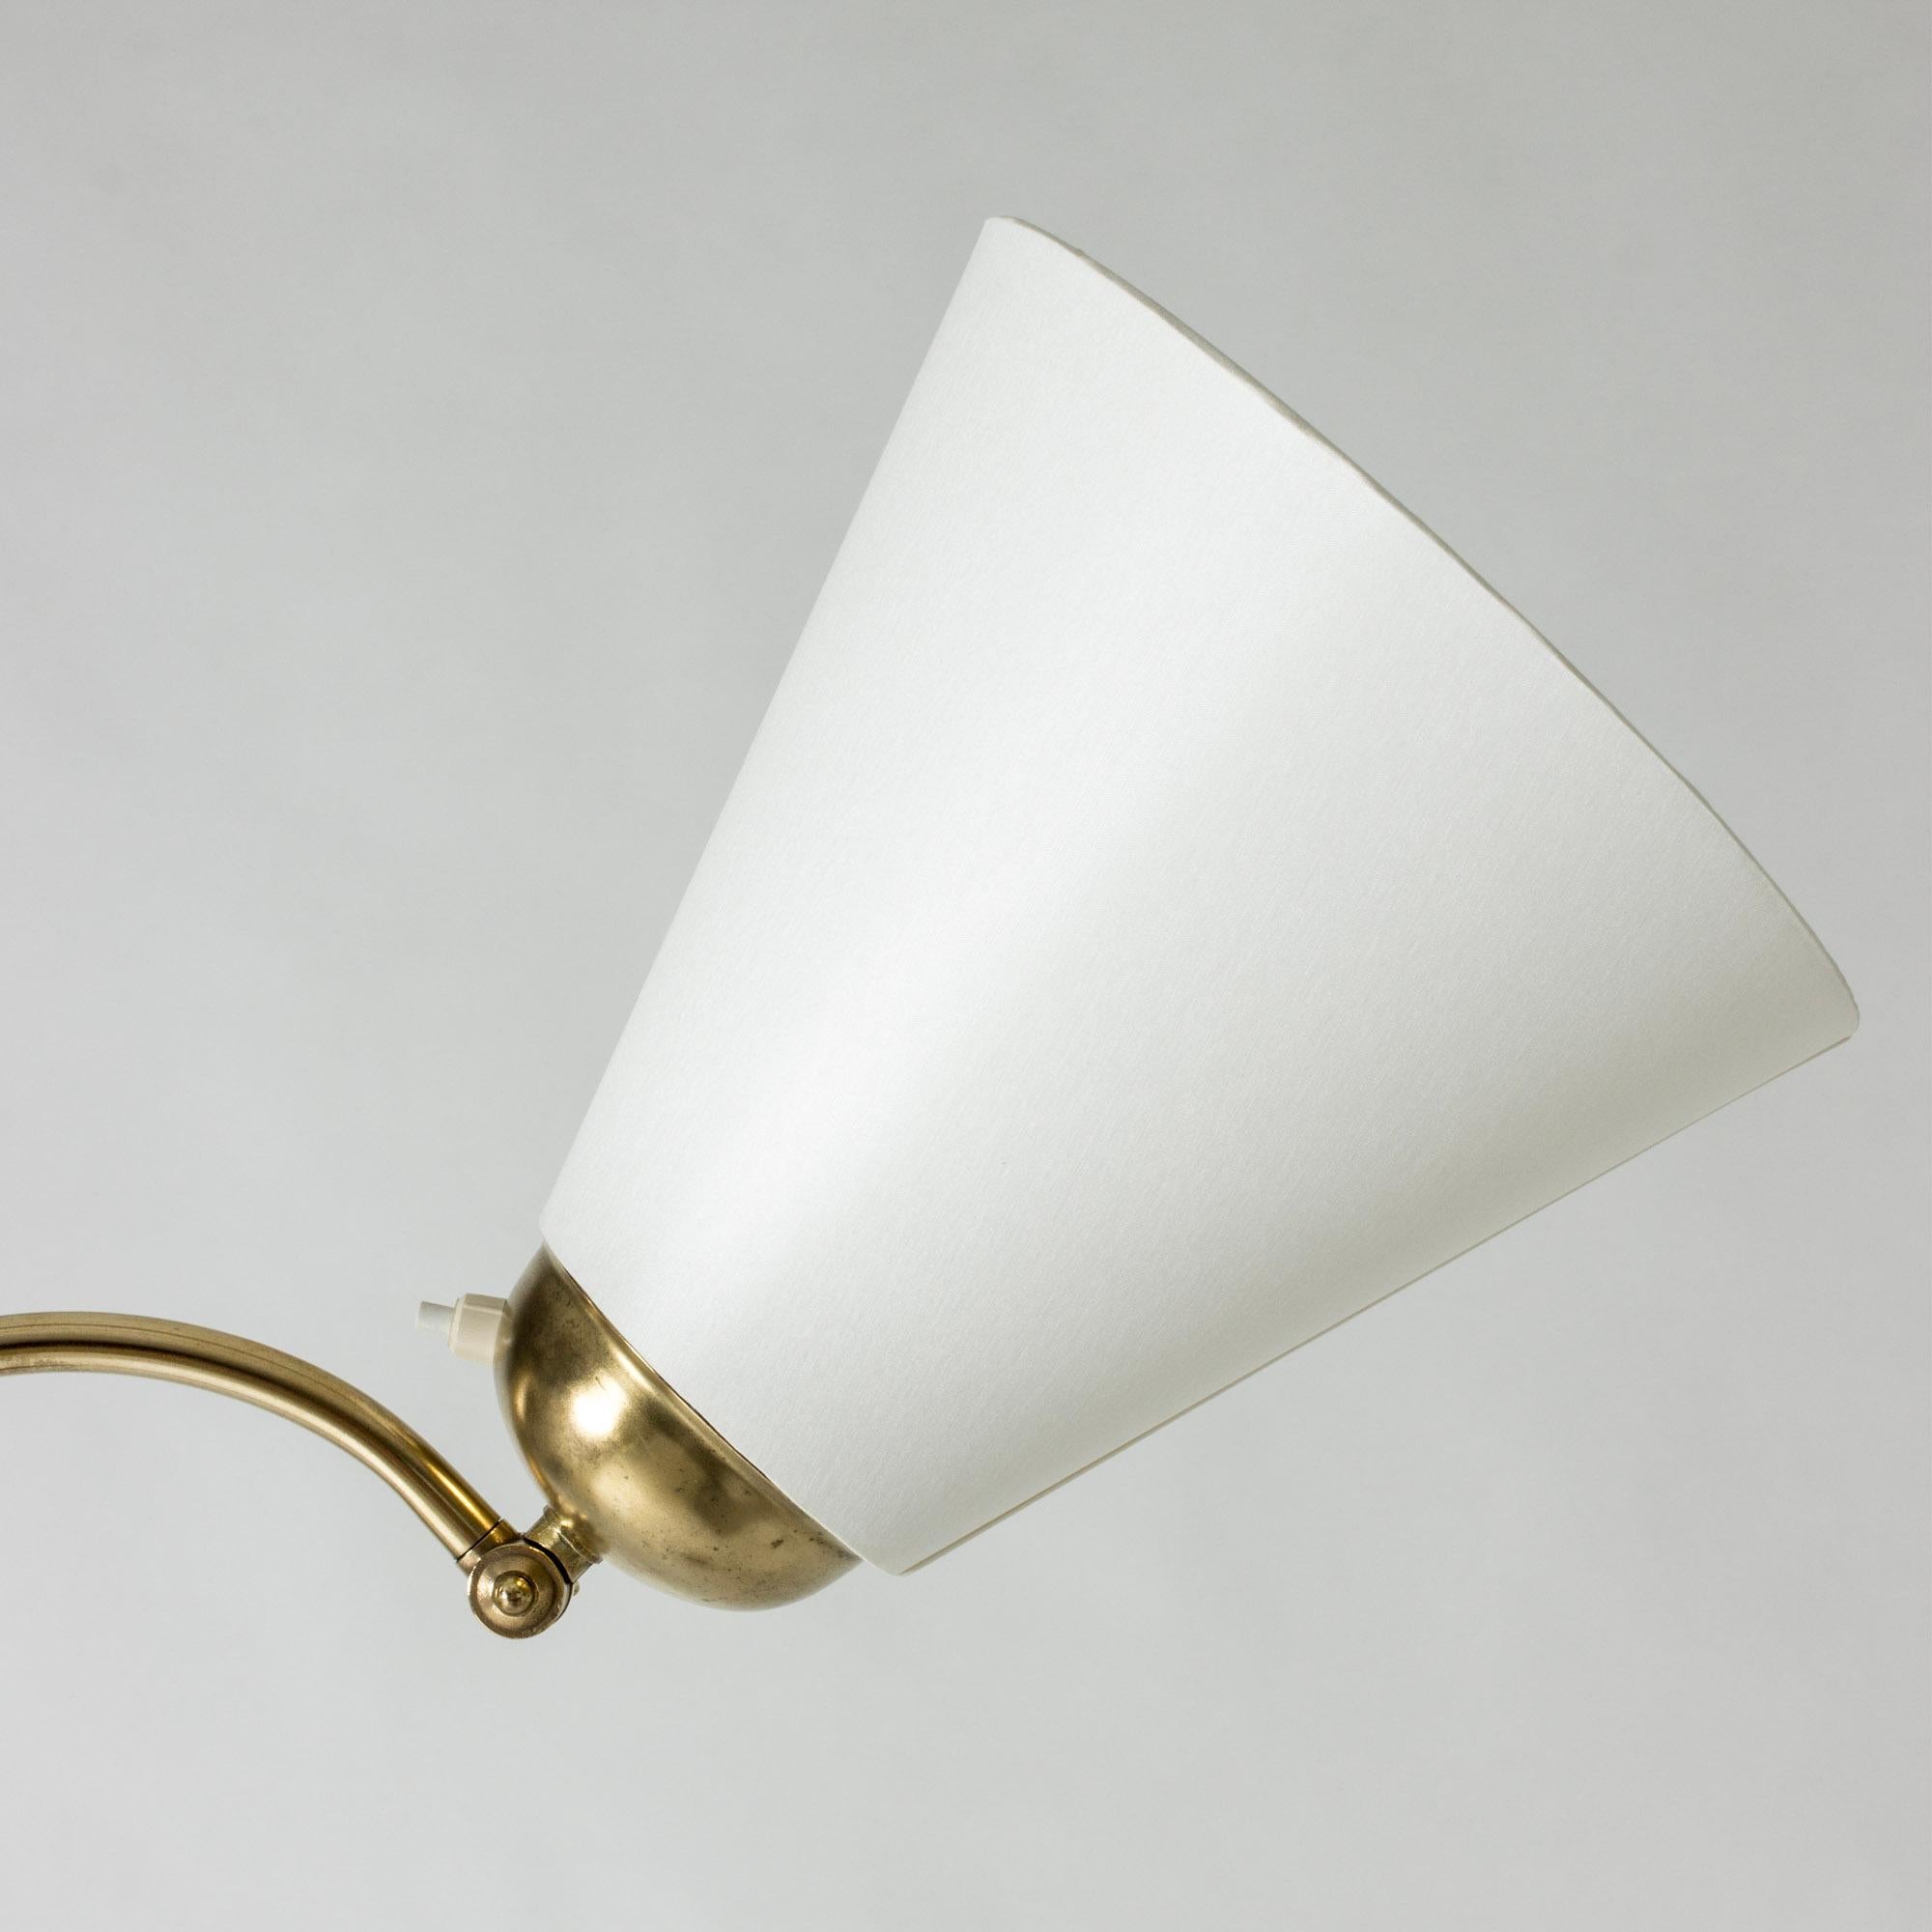 Scandinavian Midcentury Brass Floor Lamp, Sweden, 1940s For Sale 1